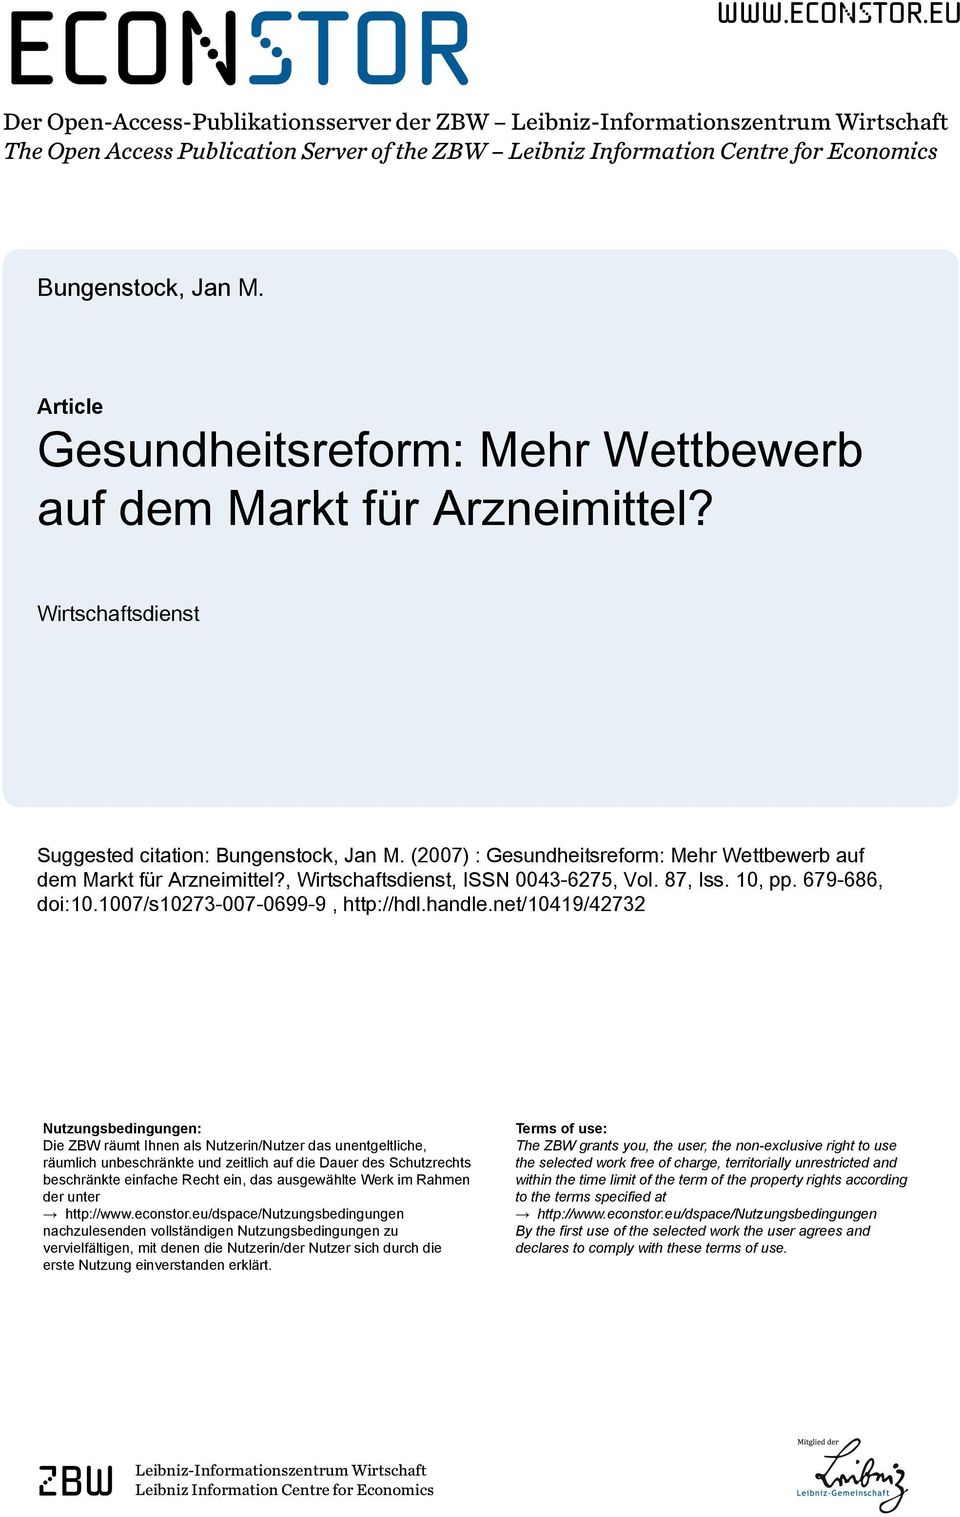 (2007) : Gesundheitsreform: Mehr Wettbewerb auf dem Markt für Arzneimittel?, Wirtschaftsdienst, ISSN 0043-6275, Vol. 87, Iss. 10, pp. 679-686, doi:10.1007/s10273-007-0699-9, http://hdl.handle.